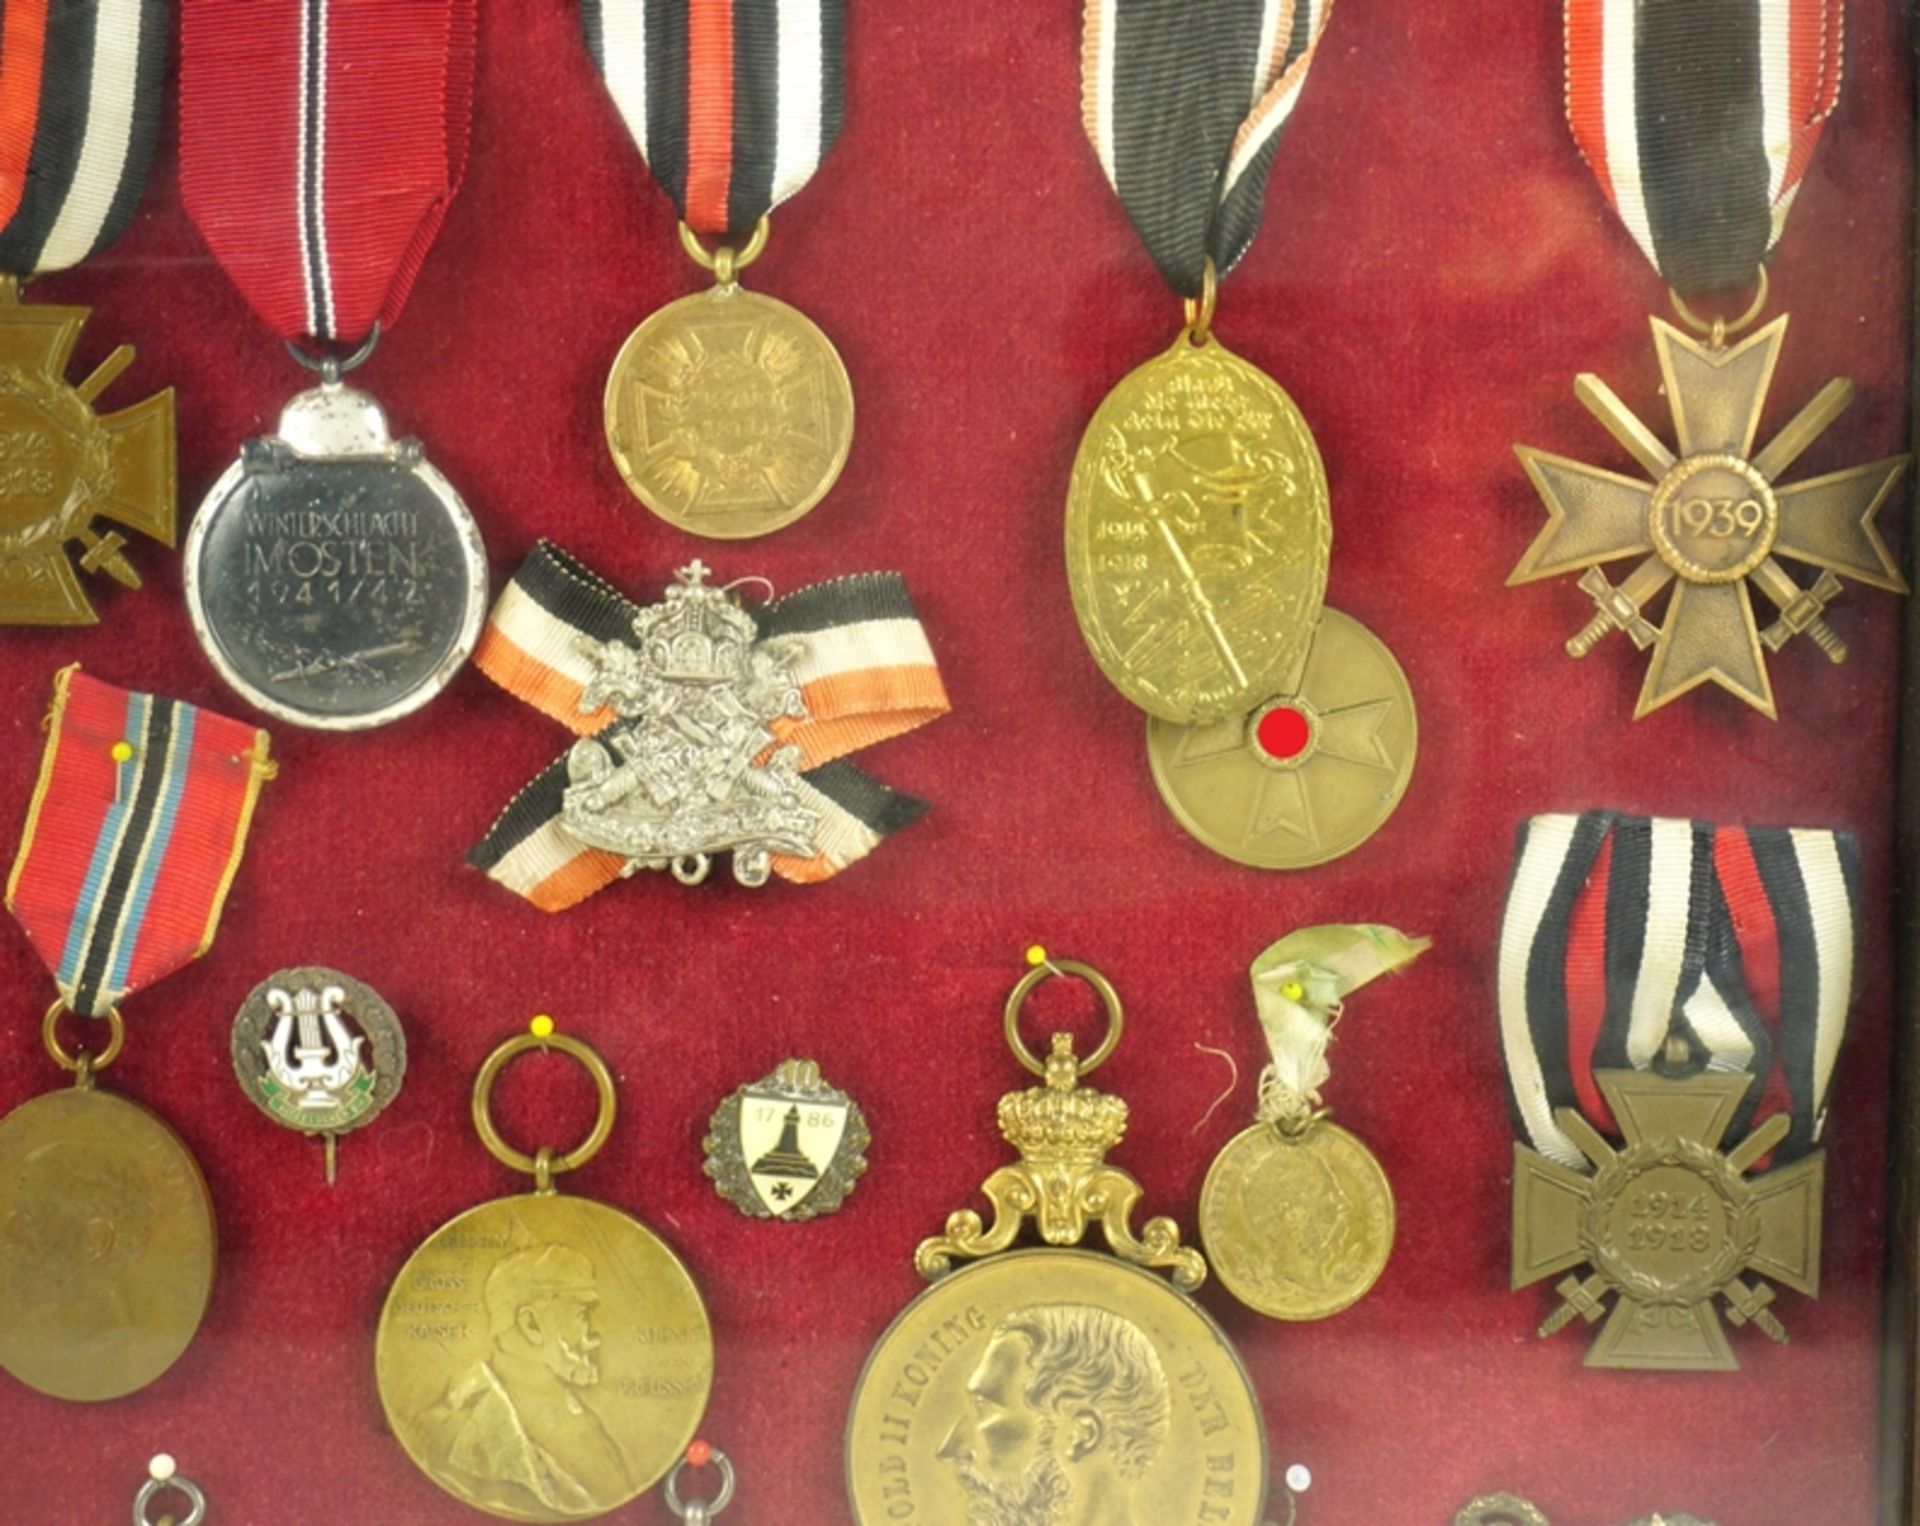 Schaurahmen mit ca. 30 Orden und Medaillen, überwiegend Deutschland, 1. und 2. Weltkrieg - Image 2 of 5